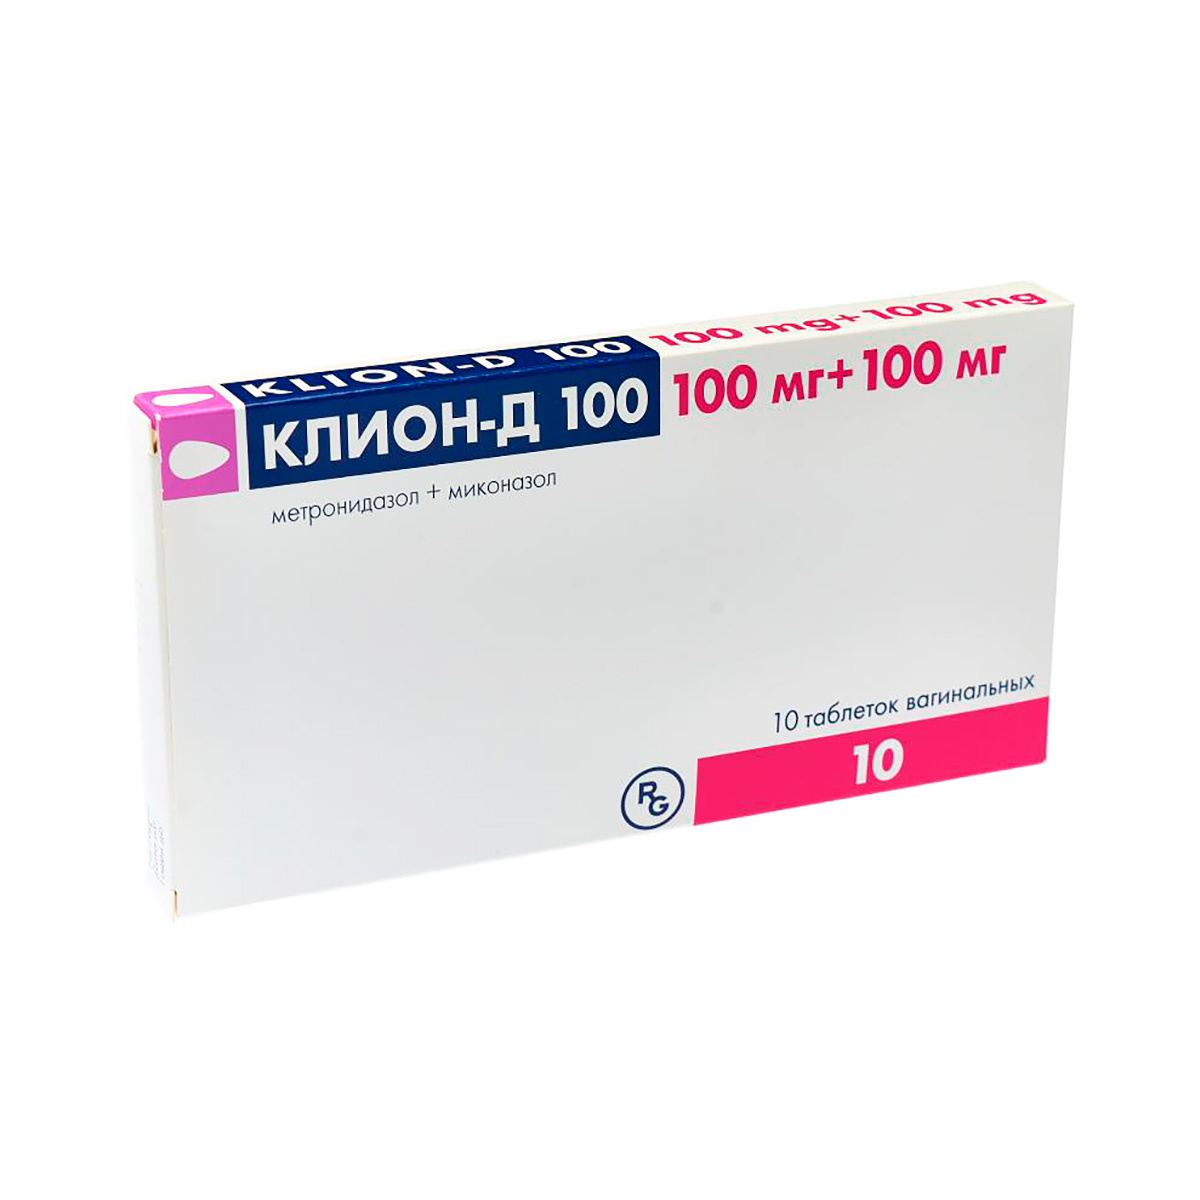 Клион-Д 100 мг+100 мг таблетки вагинальные 10 шт